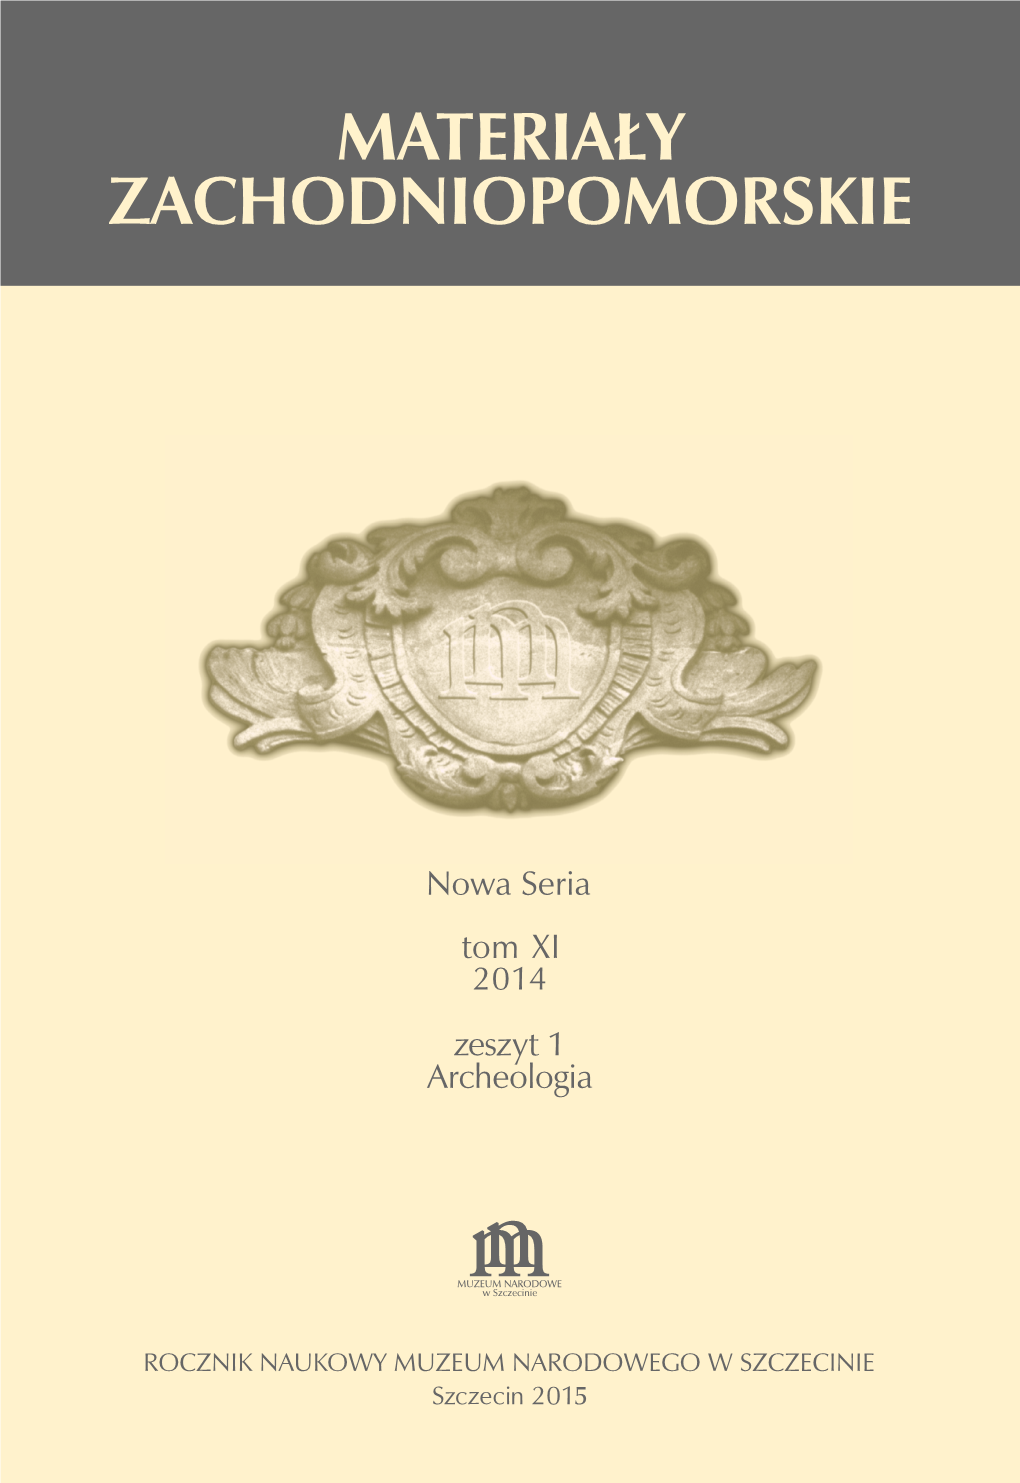 Sprawozdanie Z Działalności Naukowo-Edukacyjnej Stowarzyszenia Historyczno-Kulturalnego „Terra Incognita” Za 2014 Rok